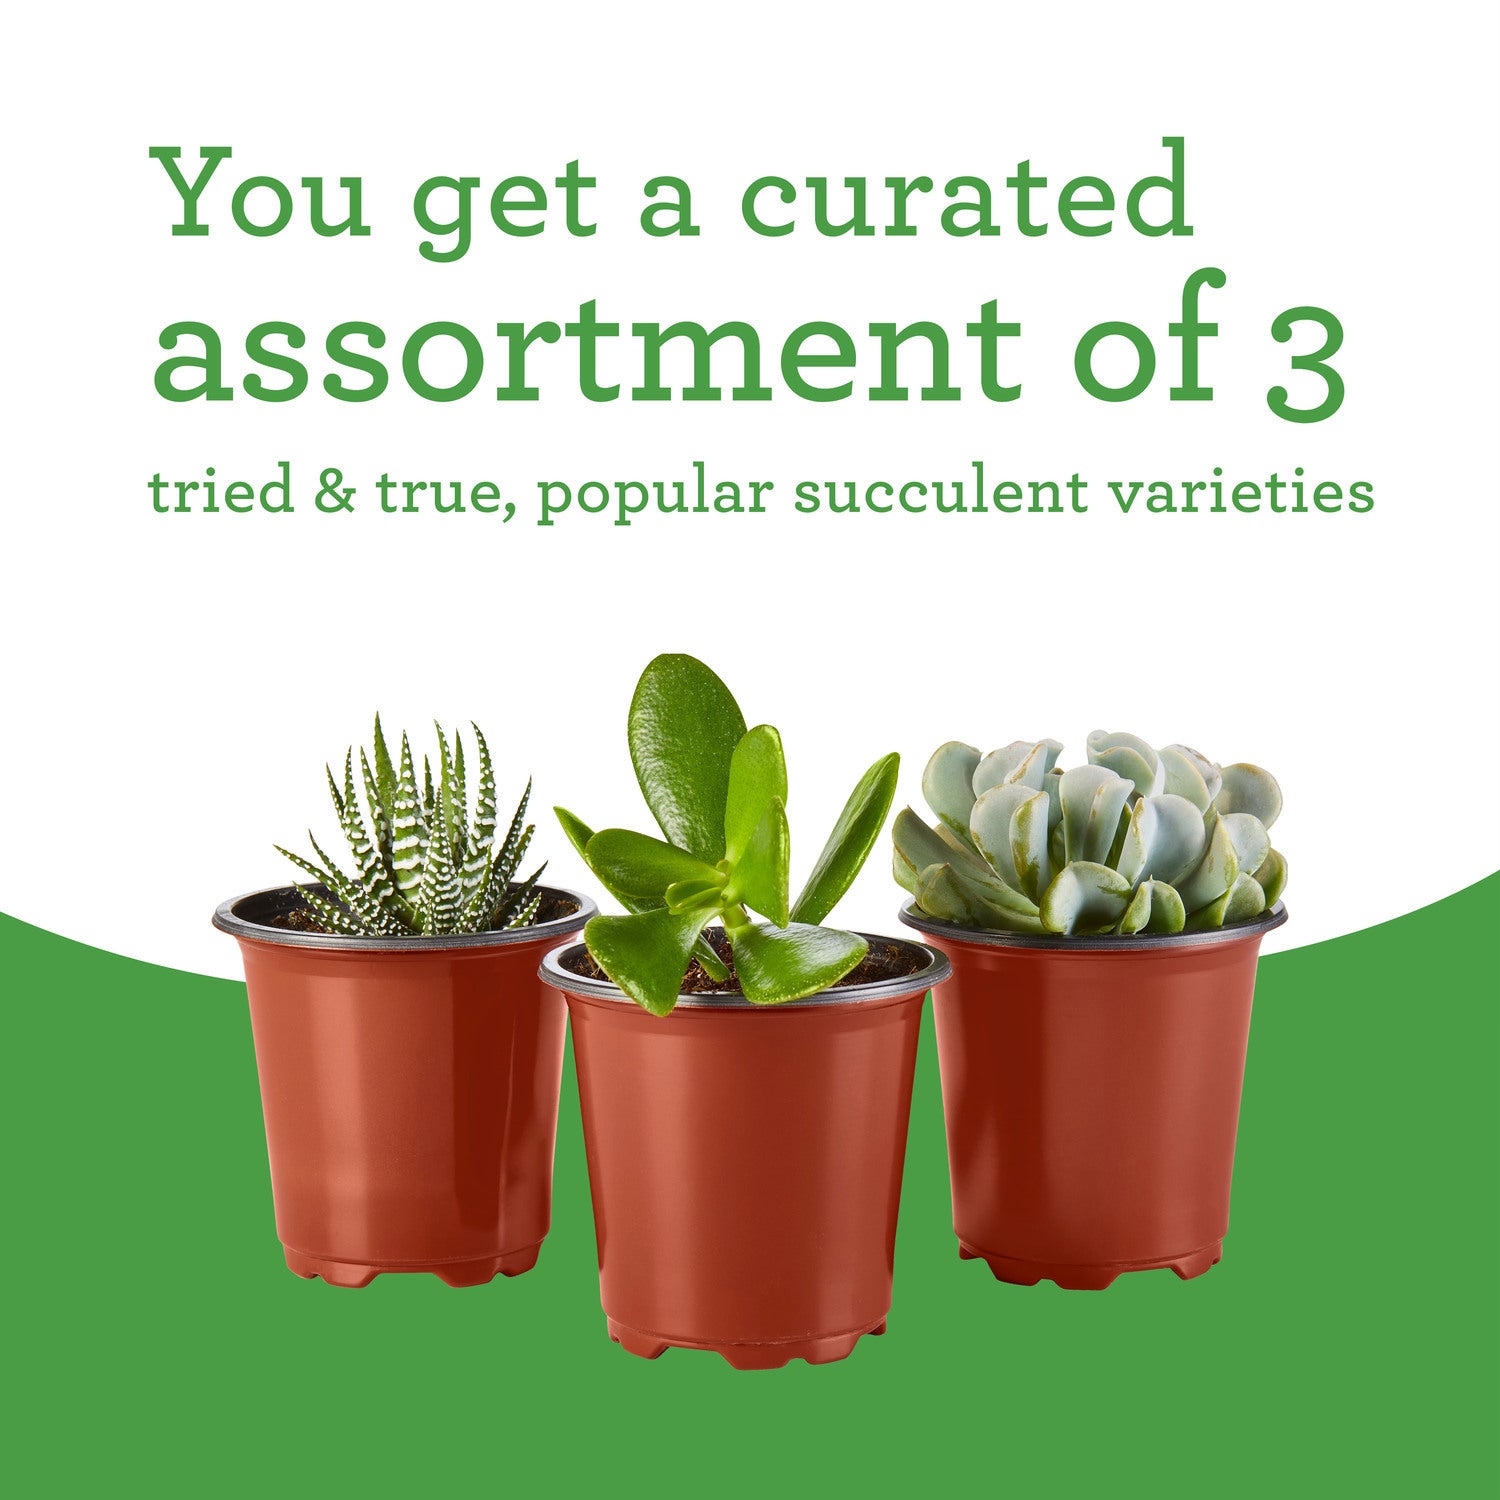 Bonnie Plants Succulent Assortment 13.2 oz., 3-Pack